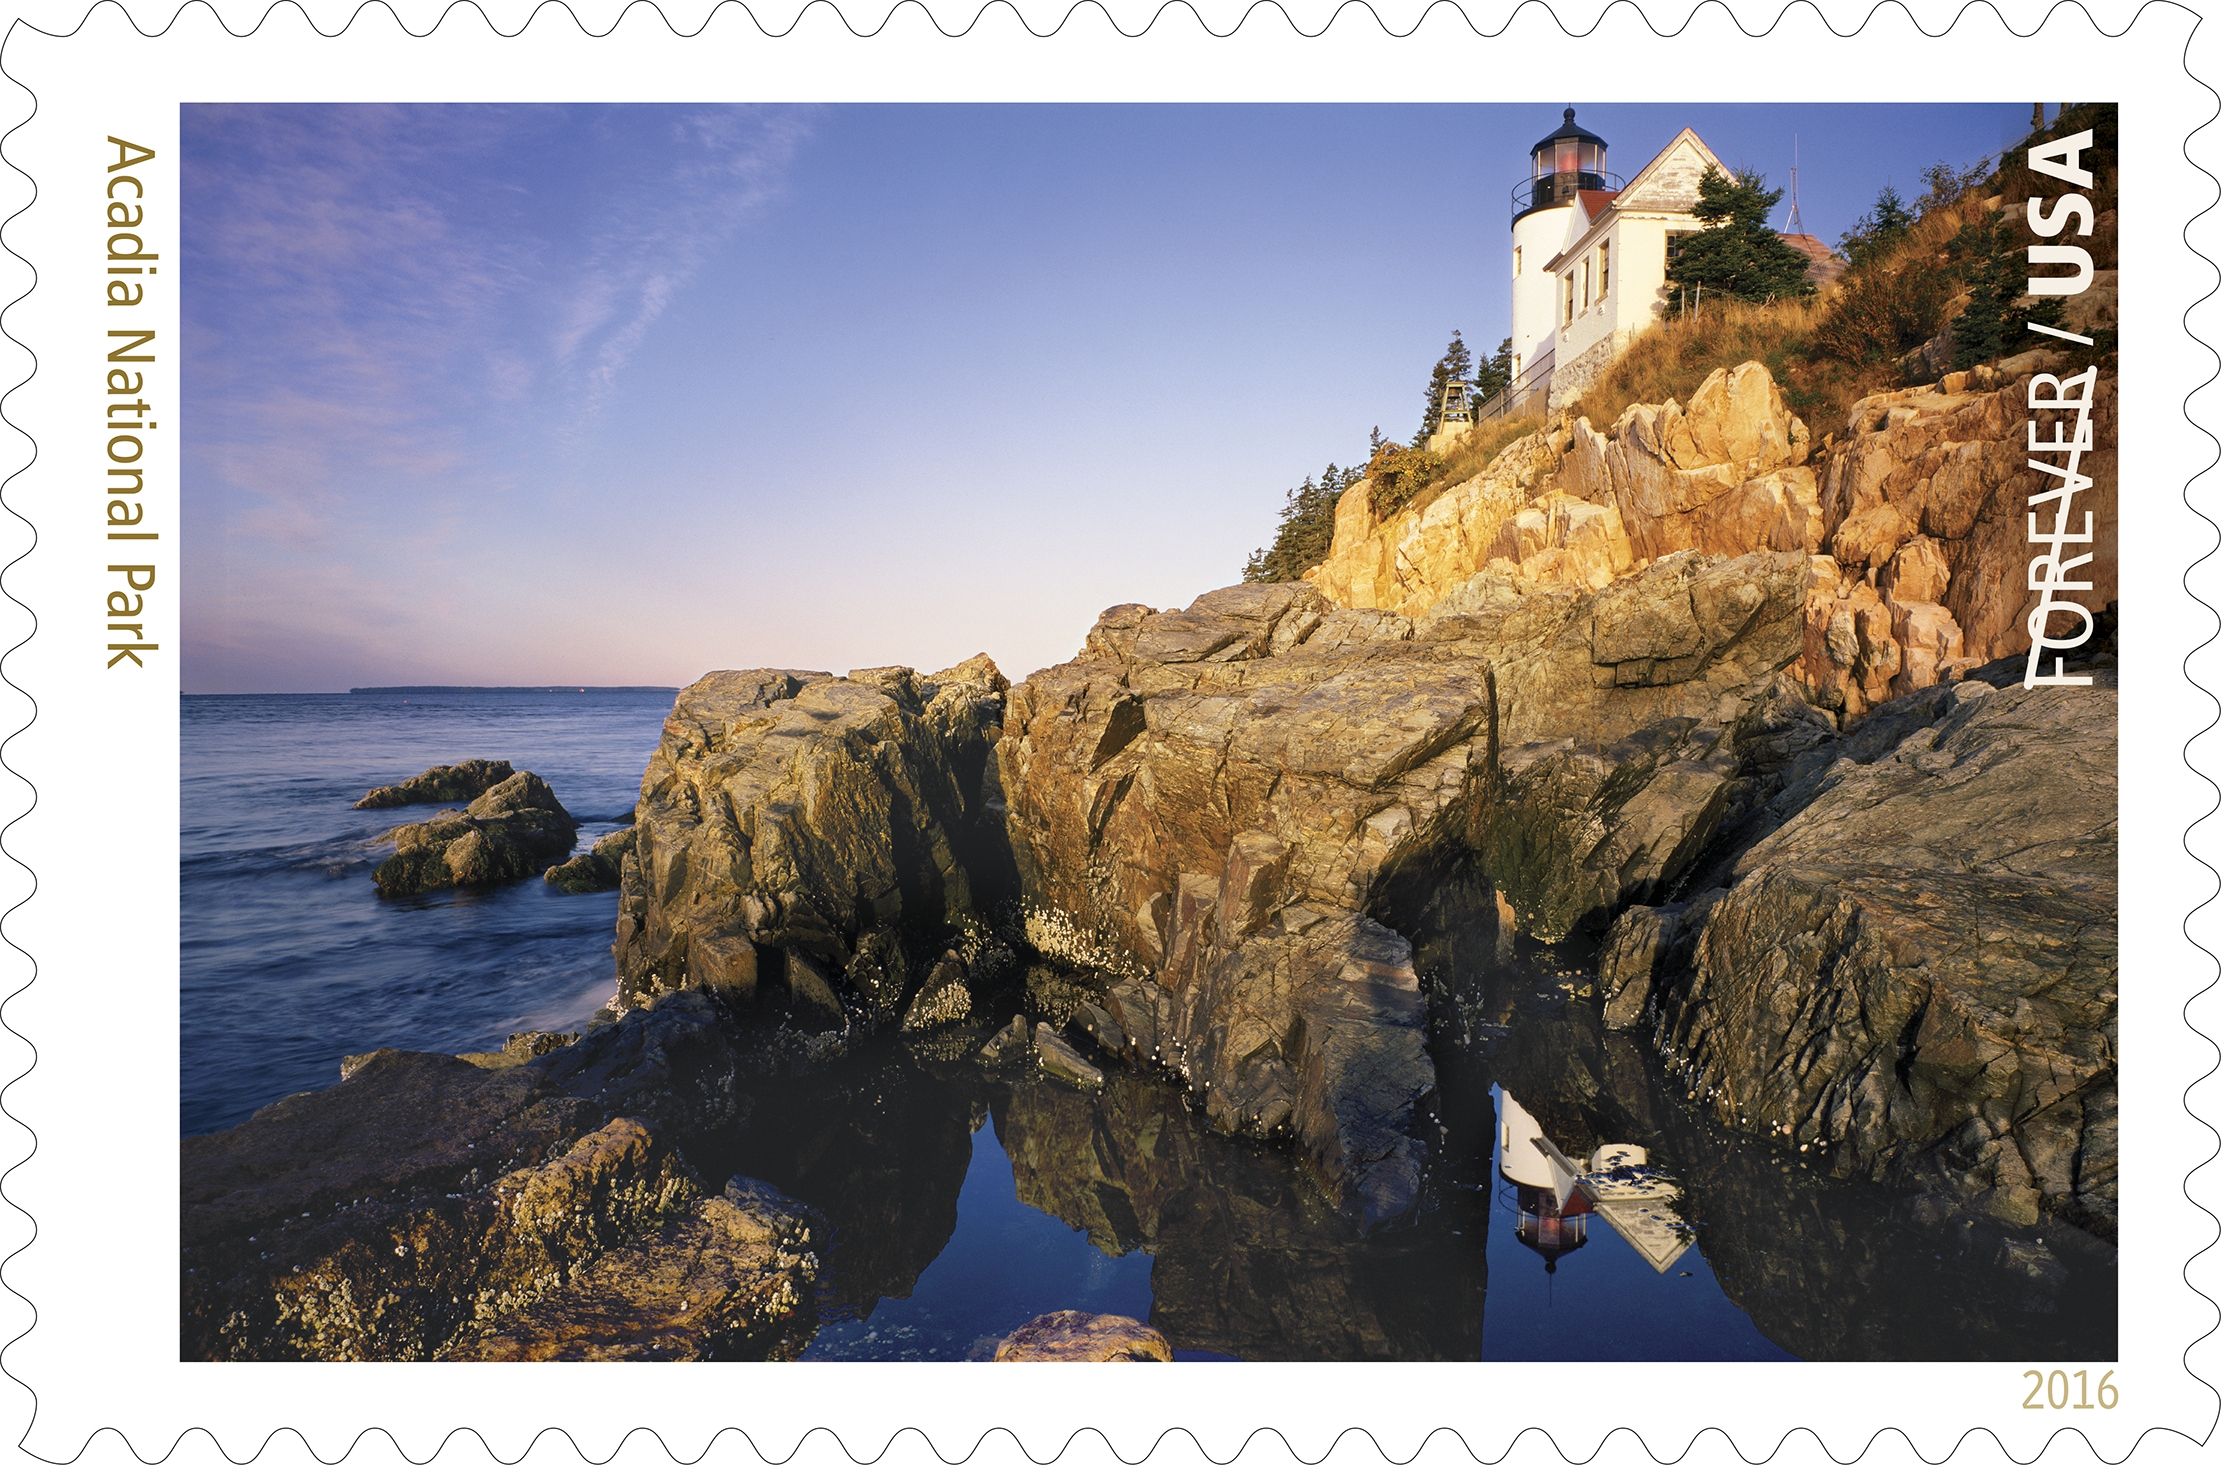 National Park Centennial stamp